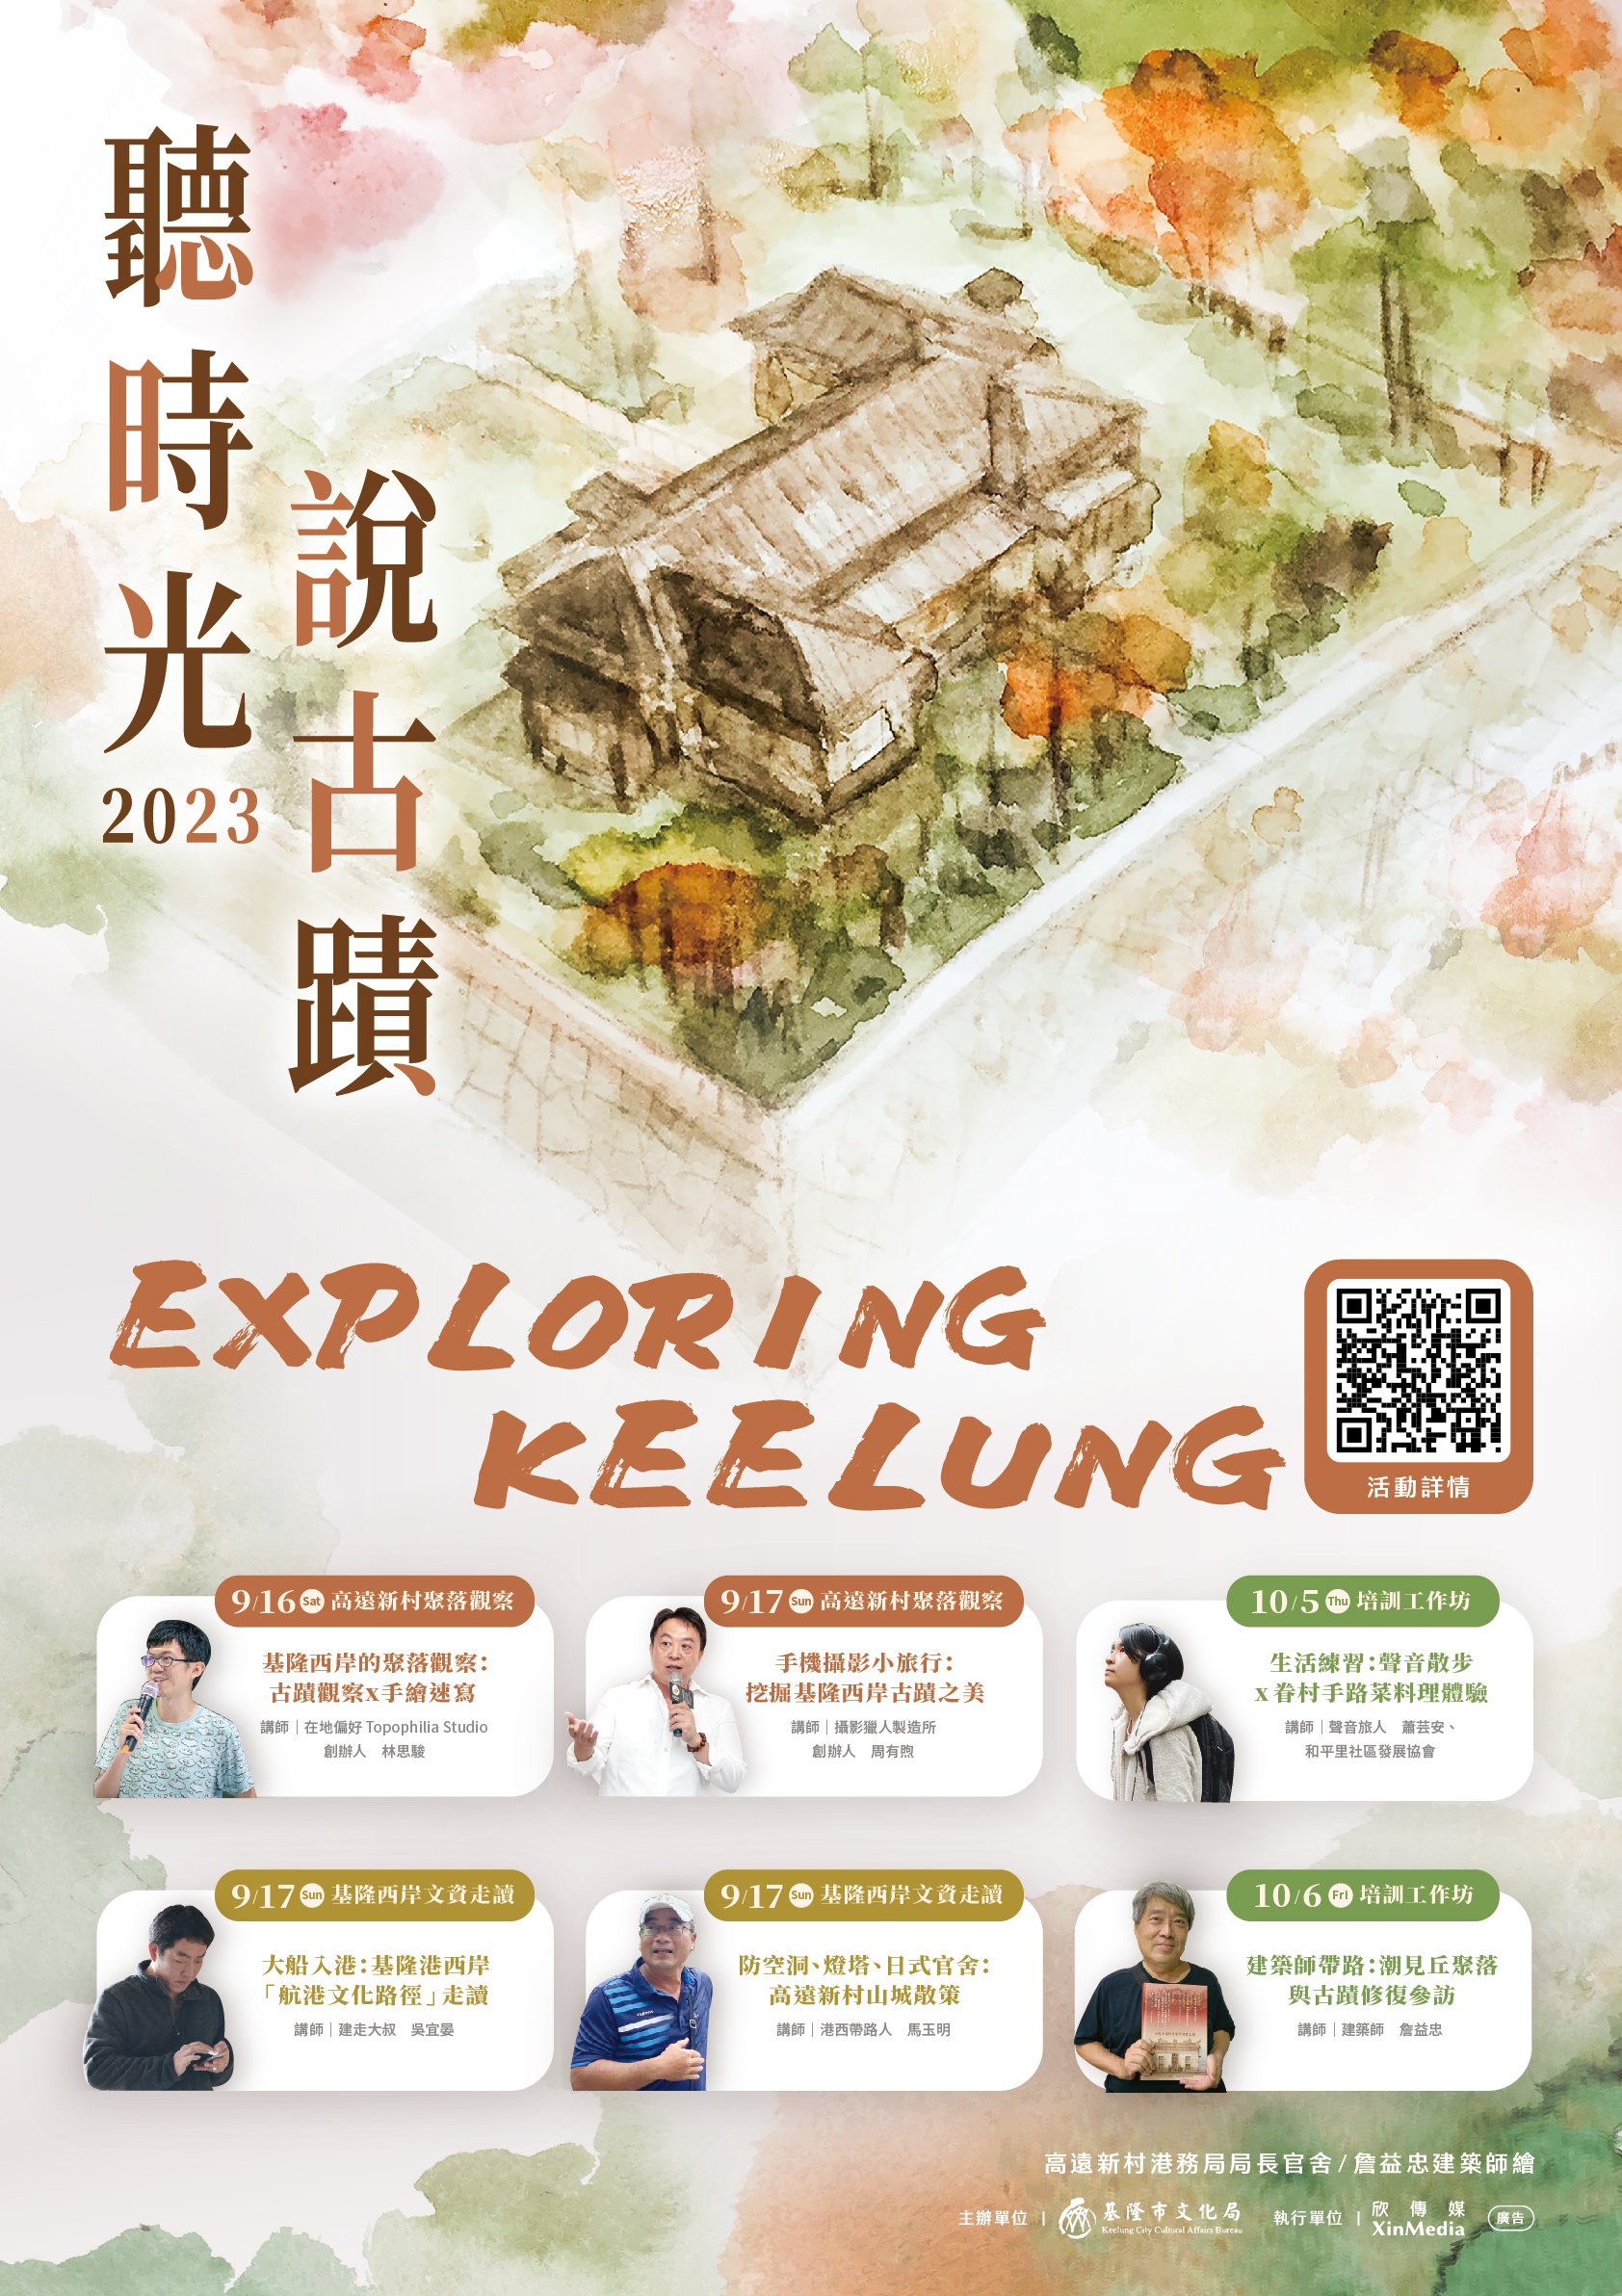 2023 聽時光說古蹟-Exploring Keelung!